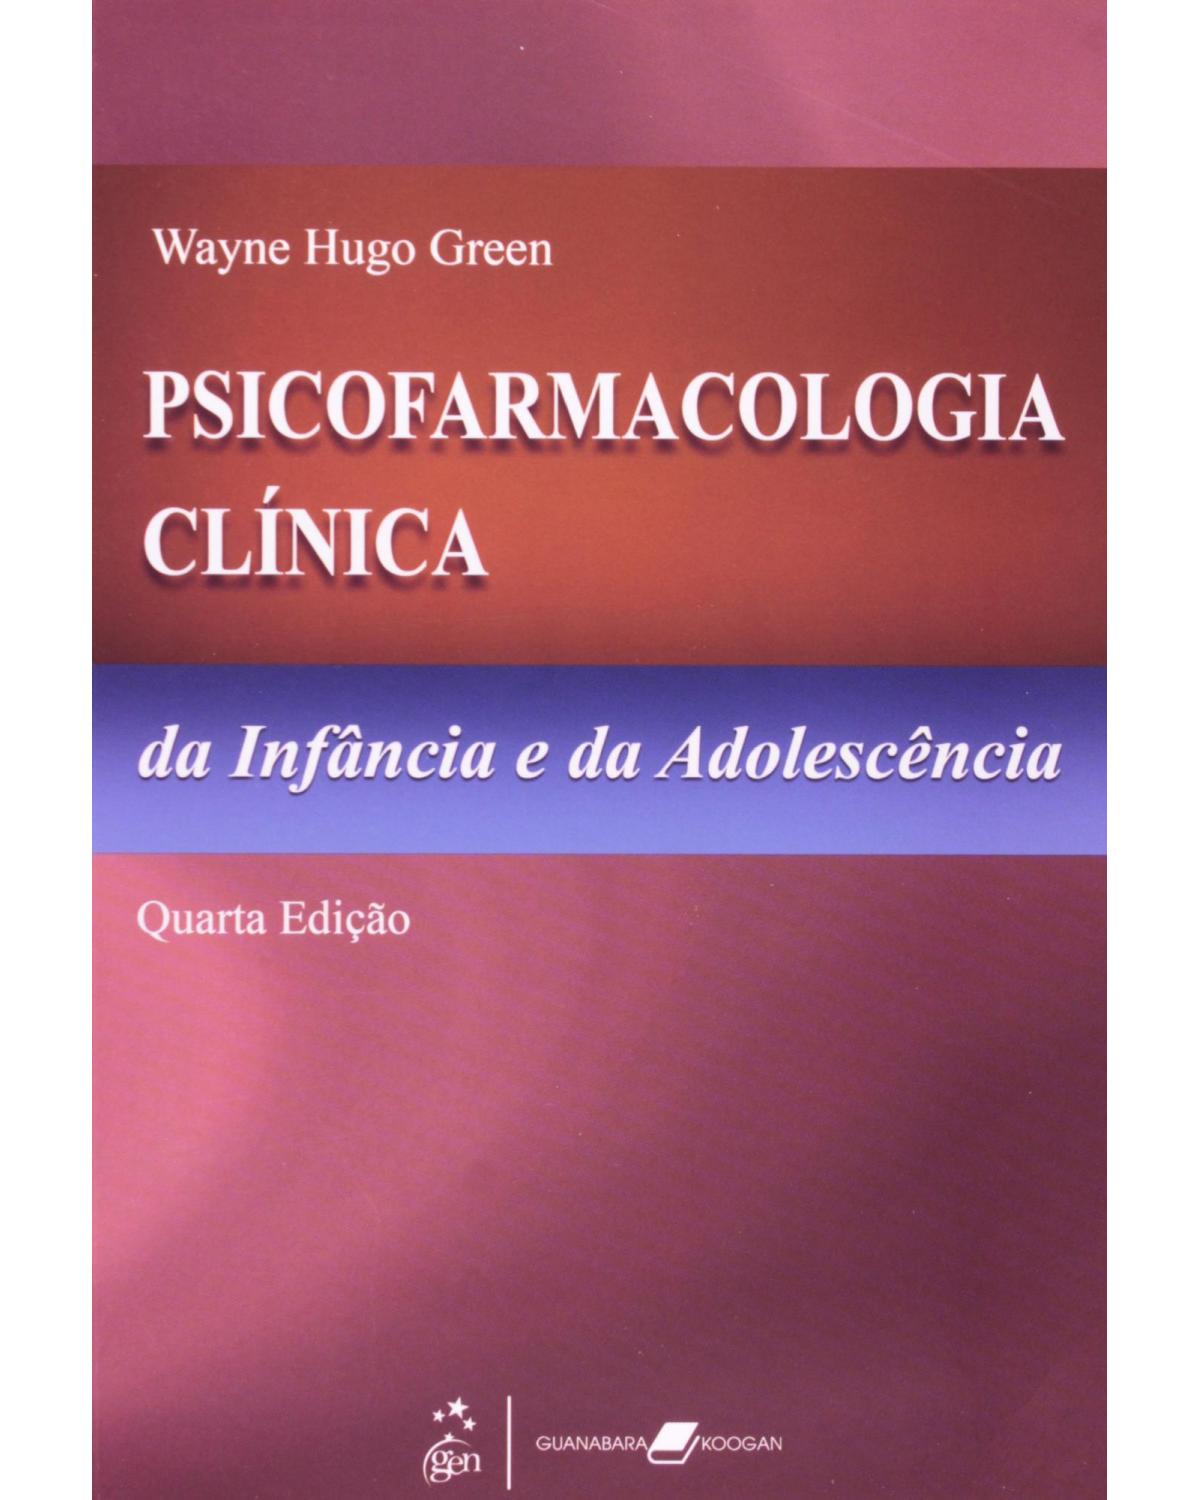 Psicofarmacologia clínica da infância e da adolescência - 4ª Edição | 2008